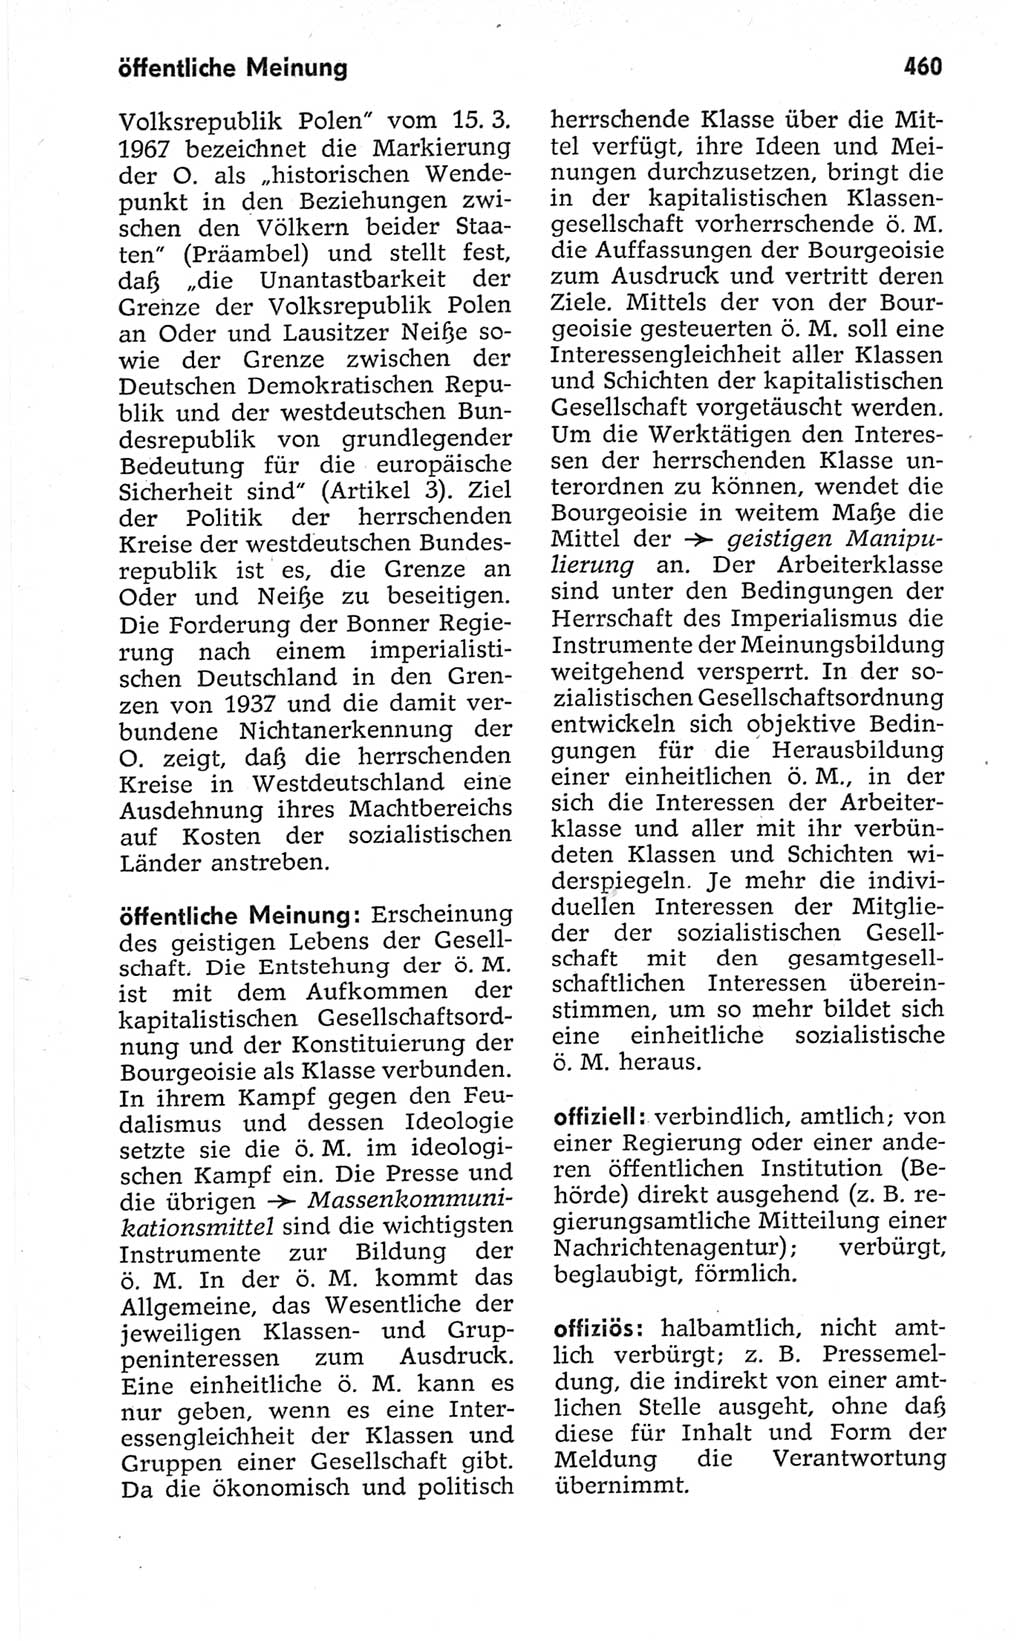 Kleines politisches Wörterbuch [Deutsche Demokratische Republik (DDR)] 1967, Seite 460 (Kl. pol. Wb. DDR 1967, S. 460)